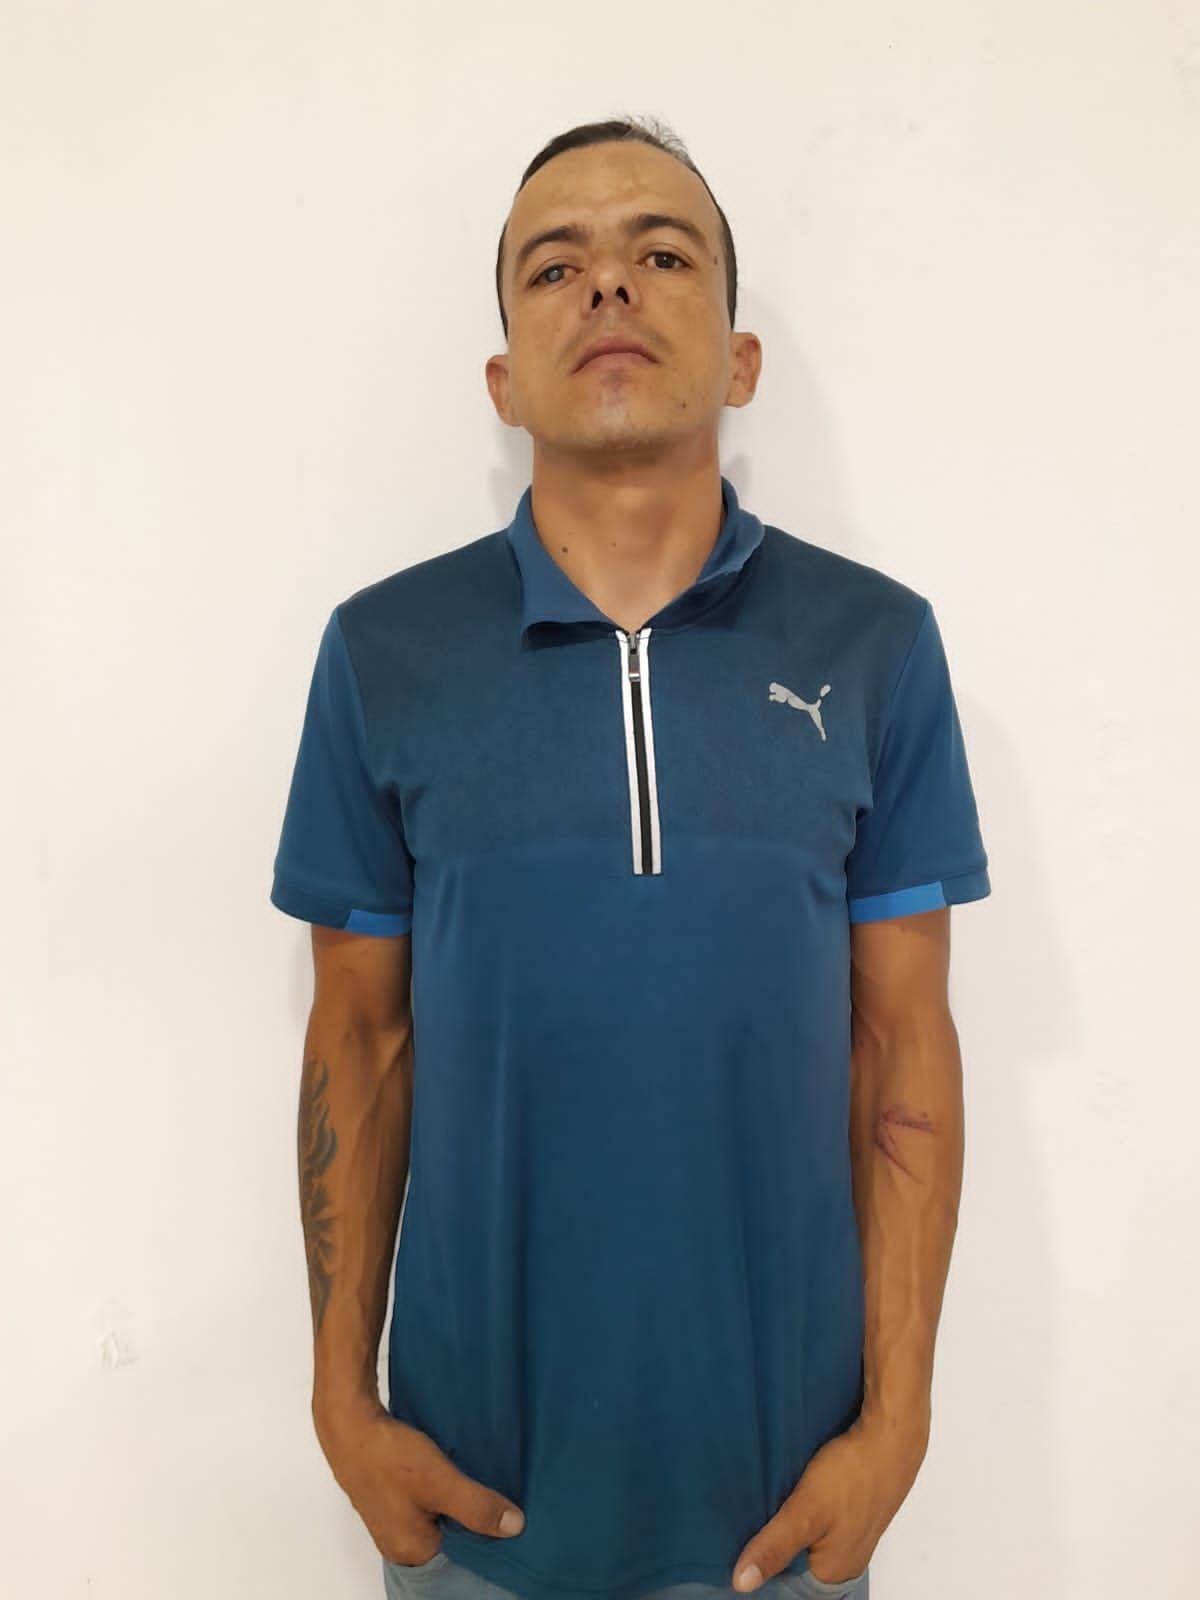 Capturaron a alias el Alacrán, cabecilla de un grupo criminal en Casanare